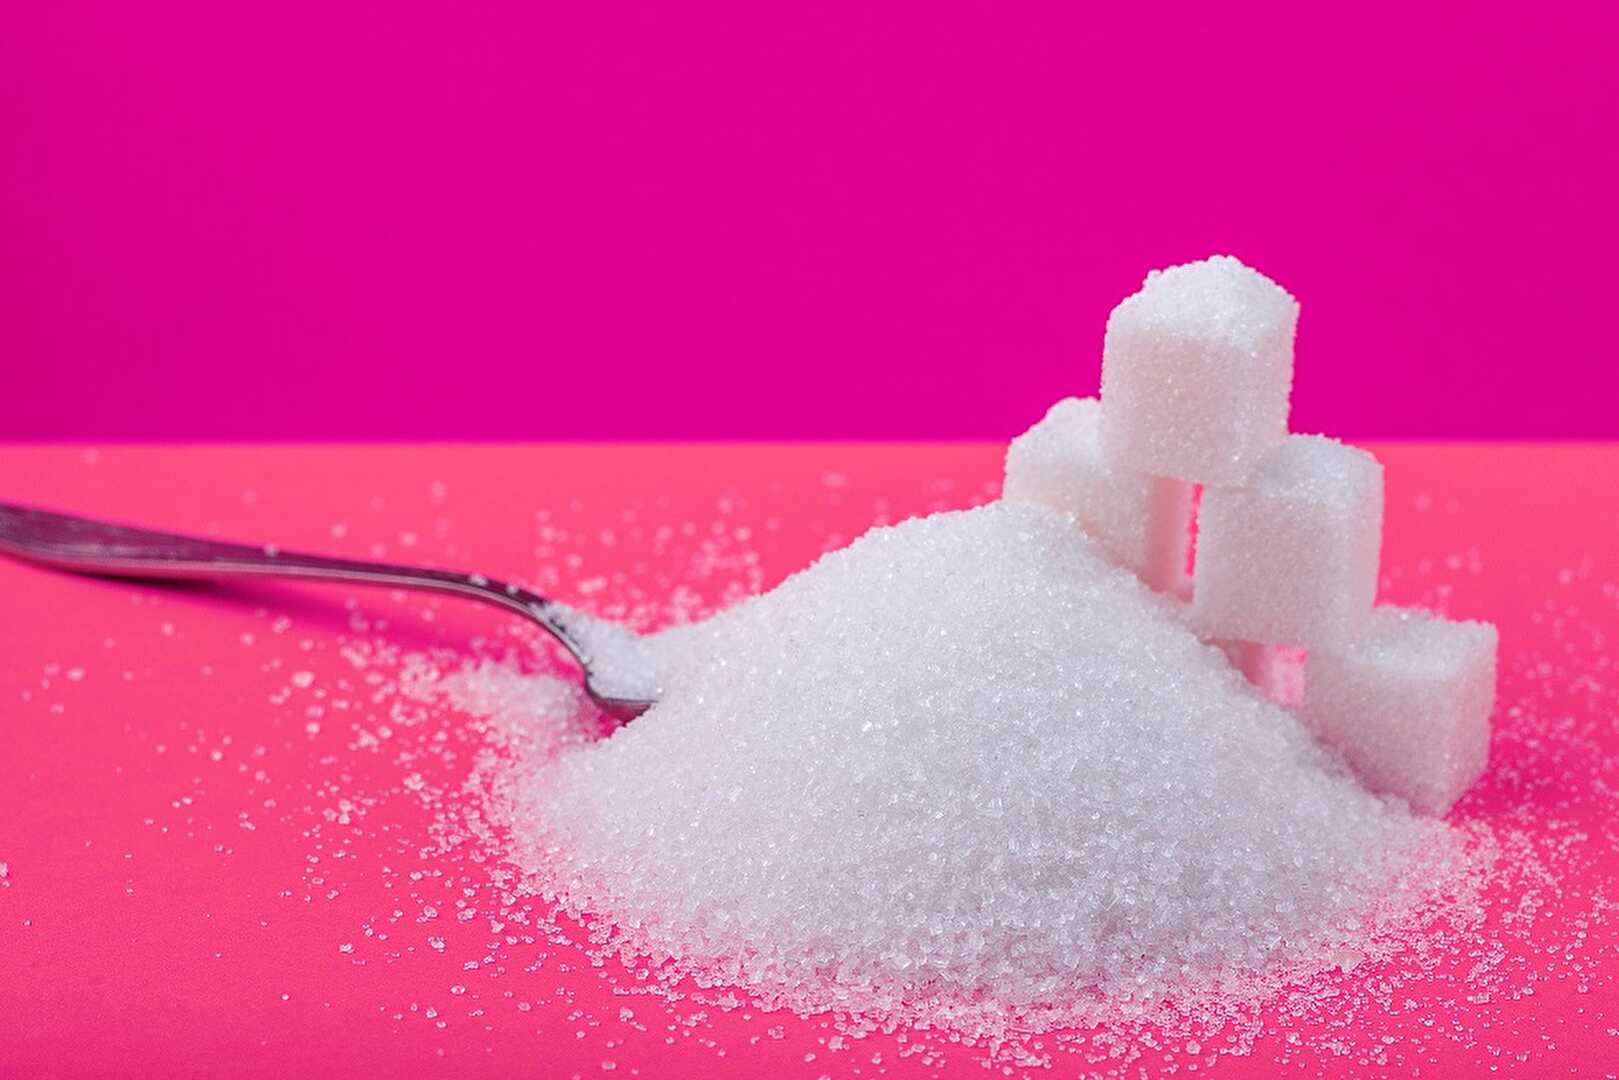 Comment réduire le sucre dans les desserts faits maison